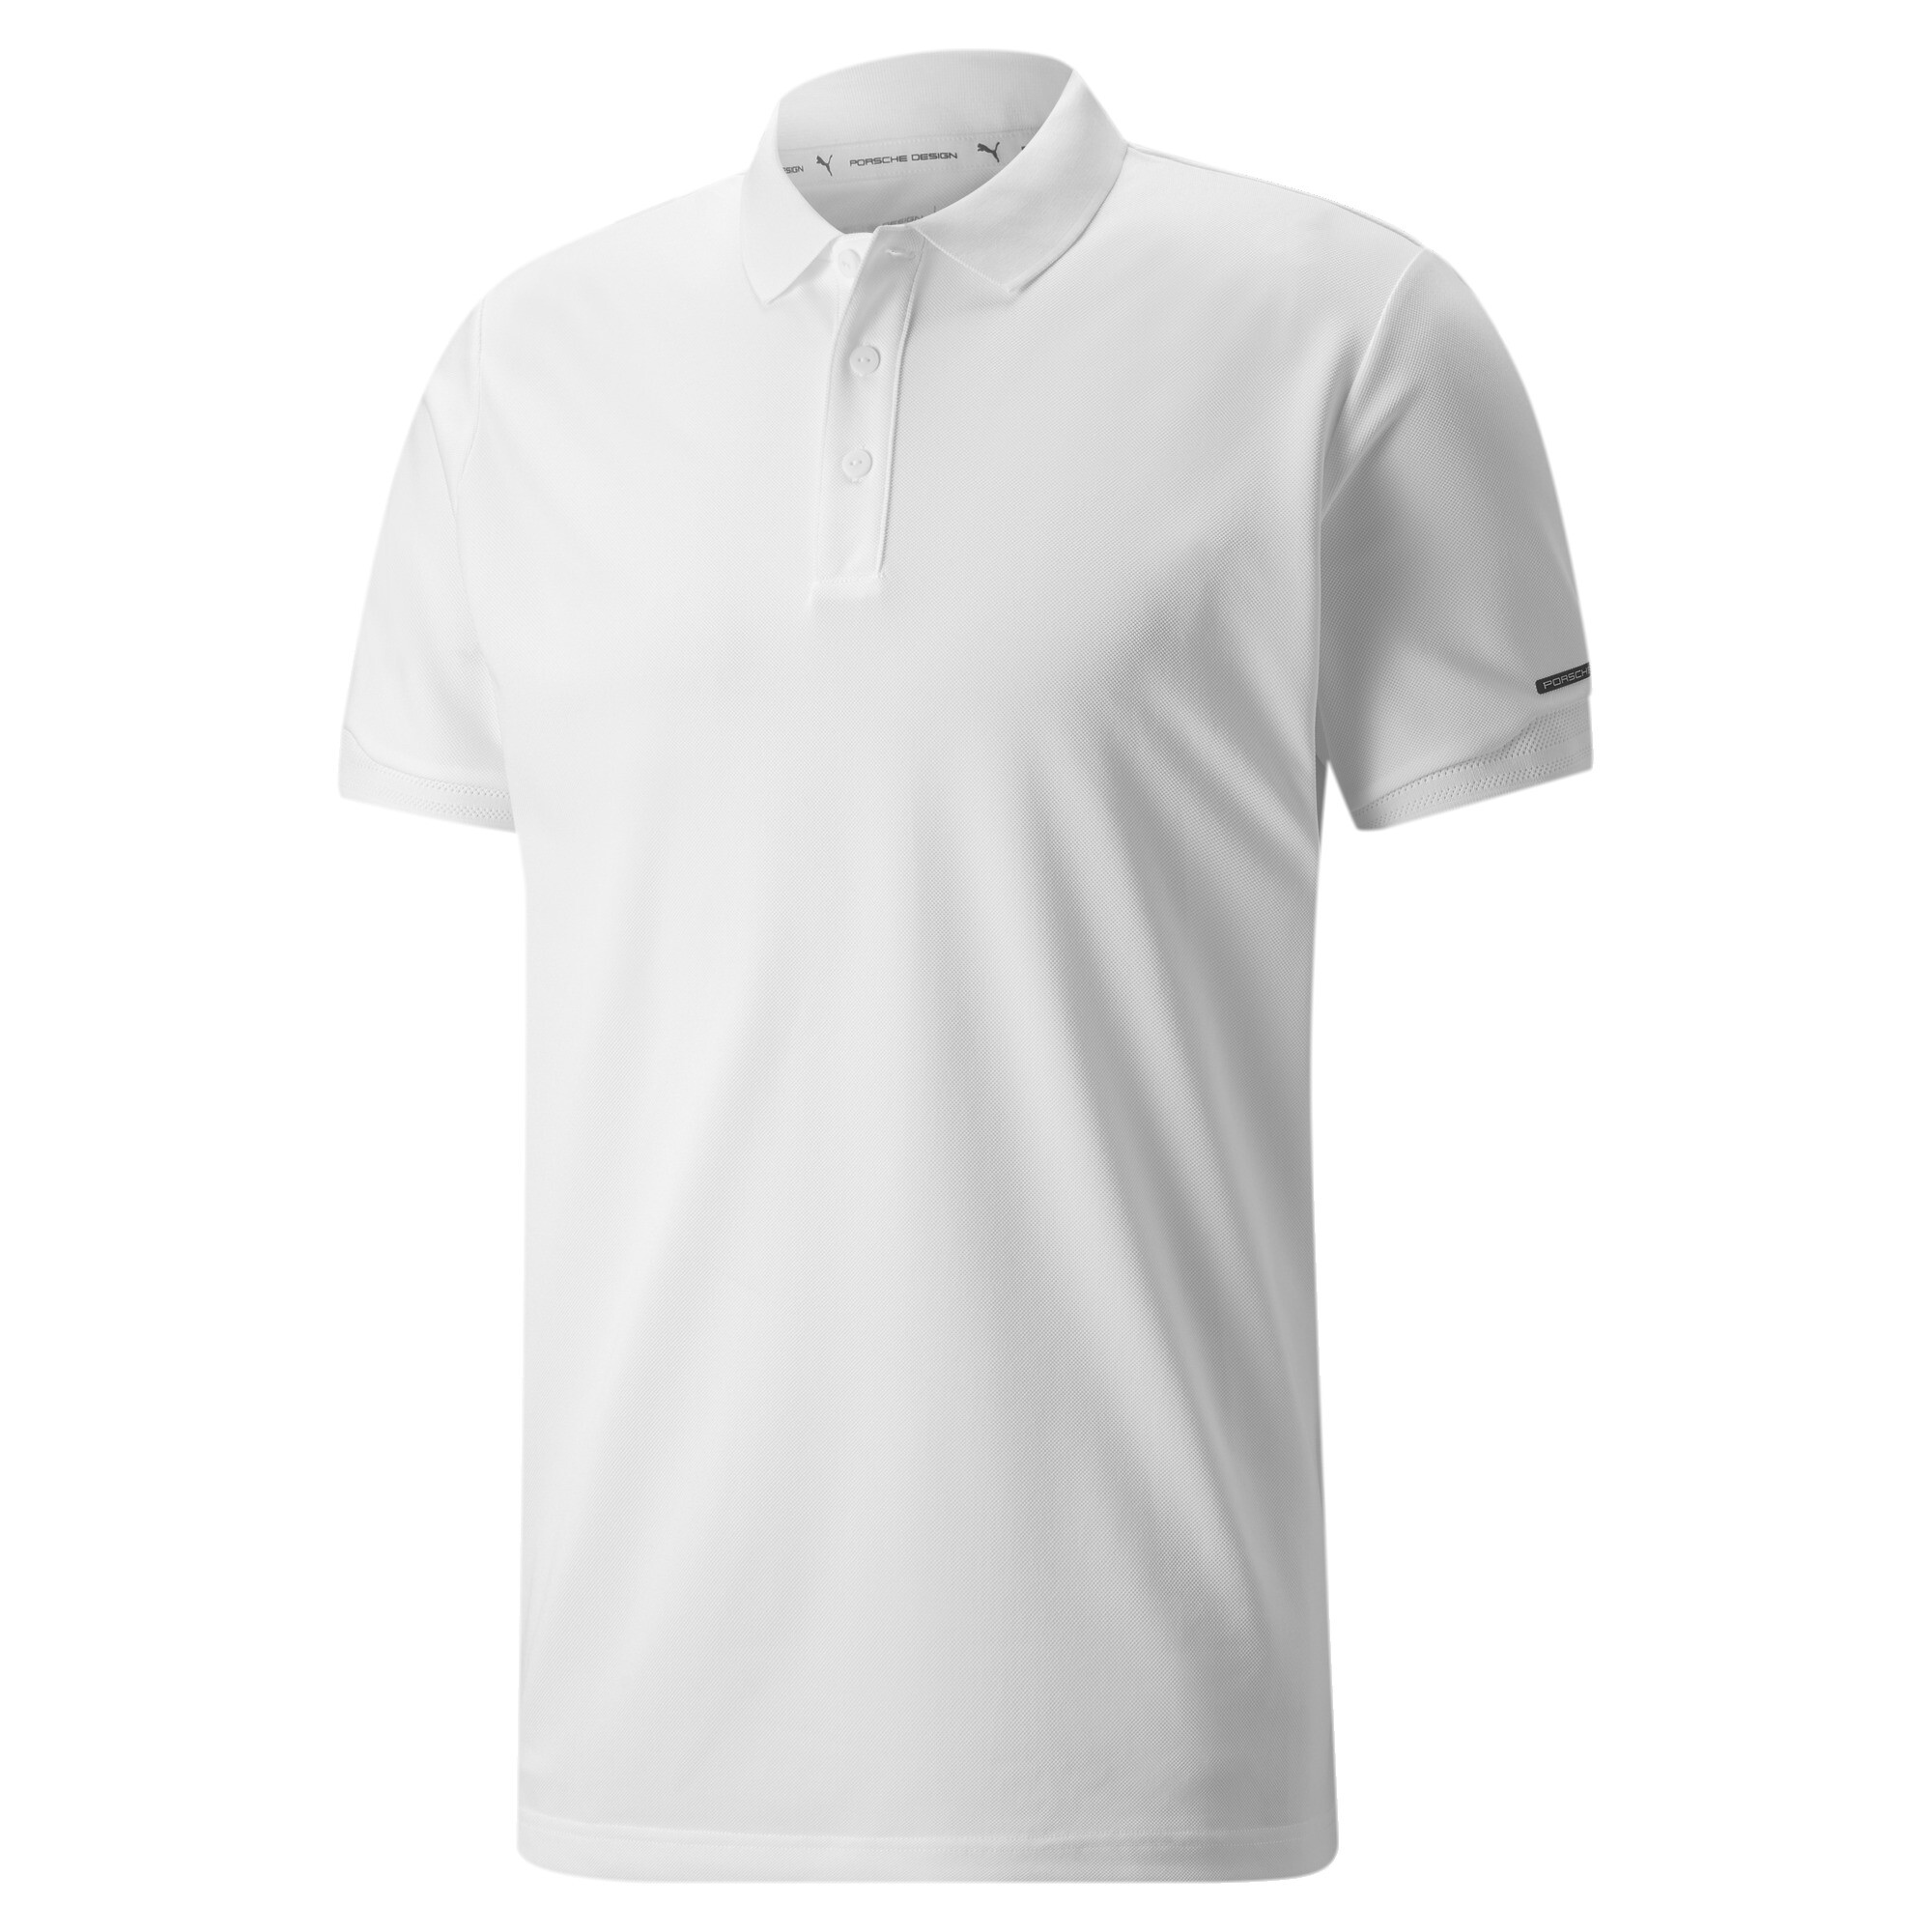 Men's PUMA Porsche Design Polo Shirt In 20 - White, Size Small